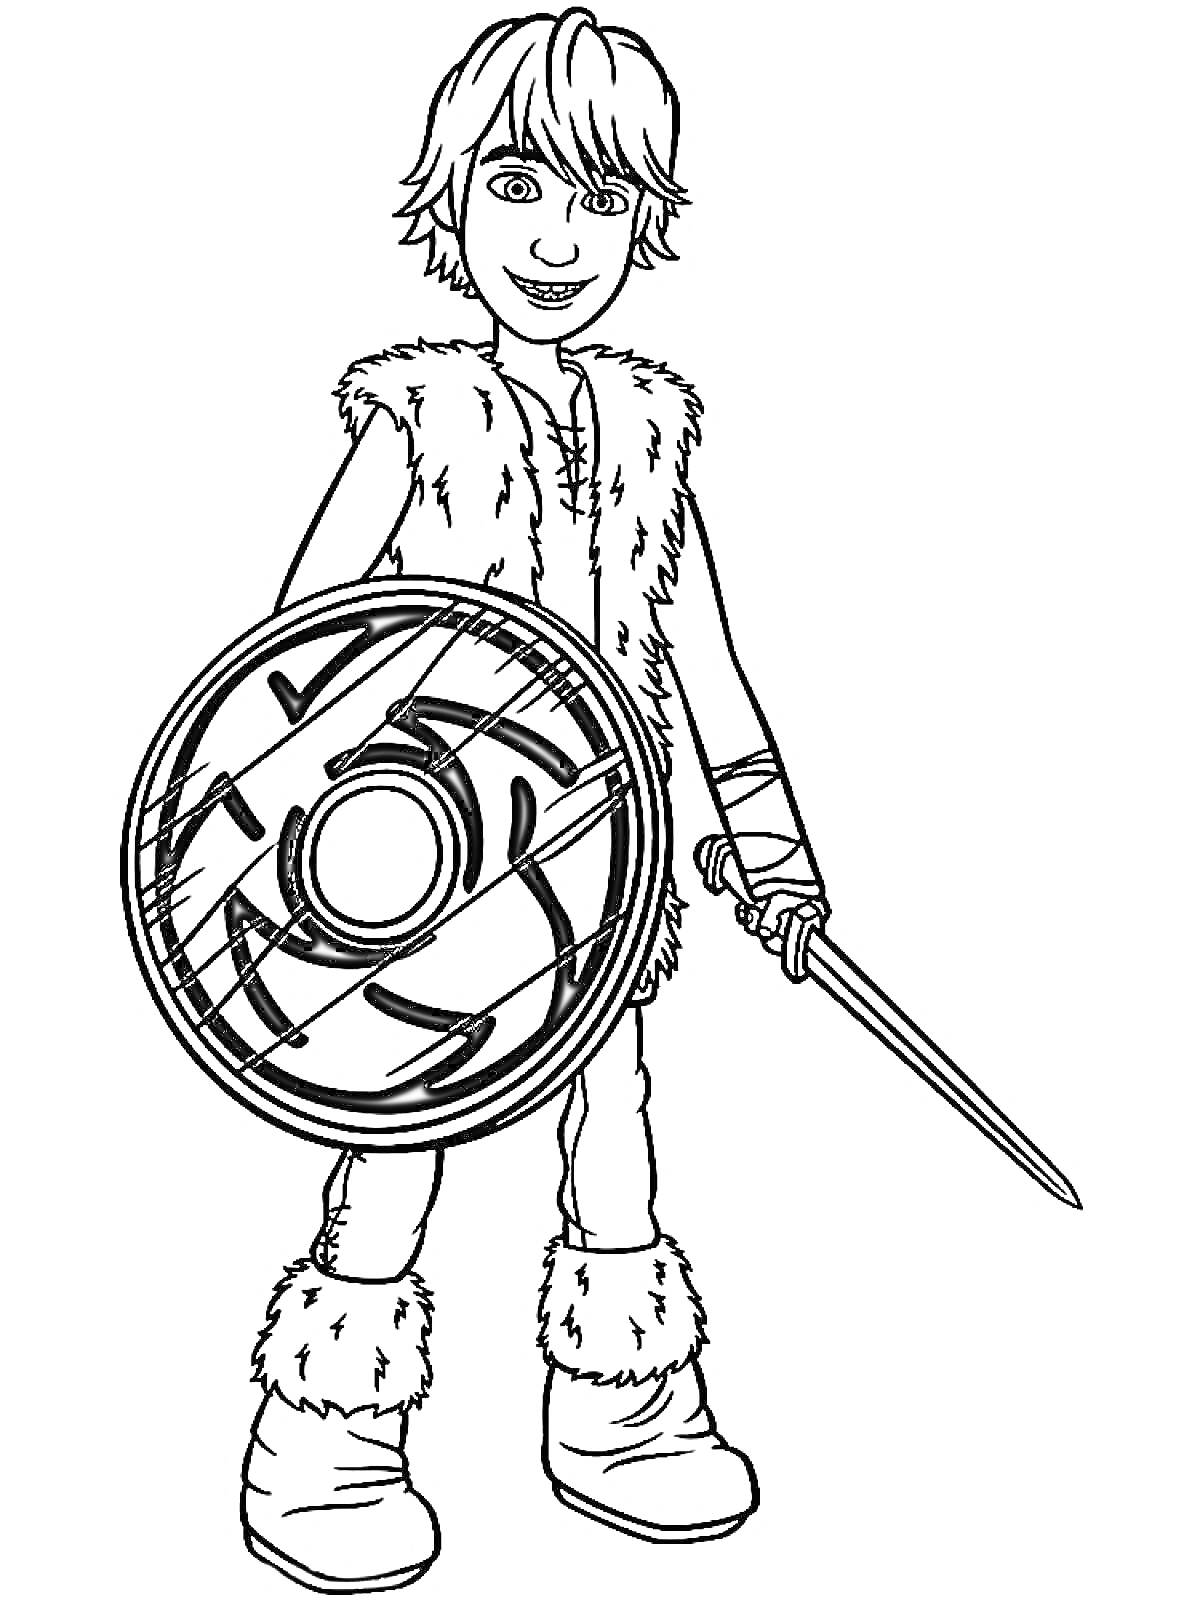 Мальчик с мечом и щитом в меховой одежде